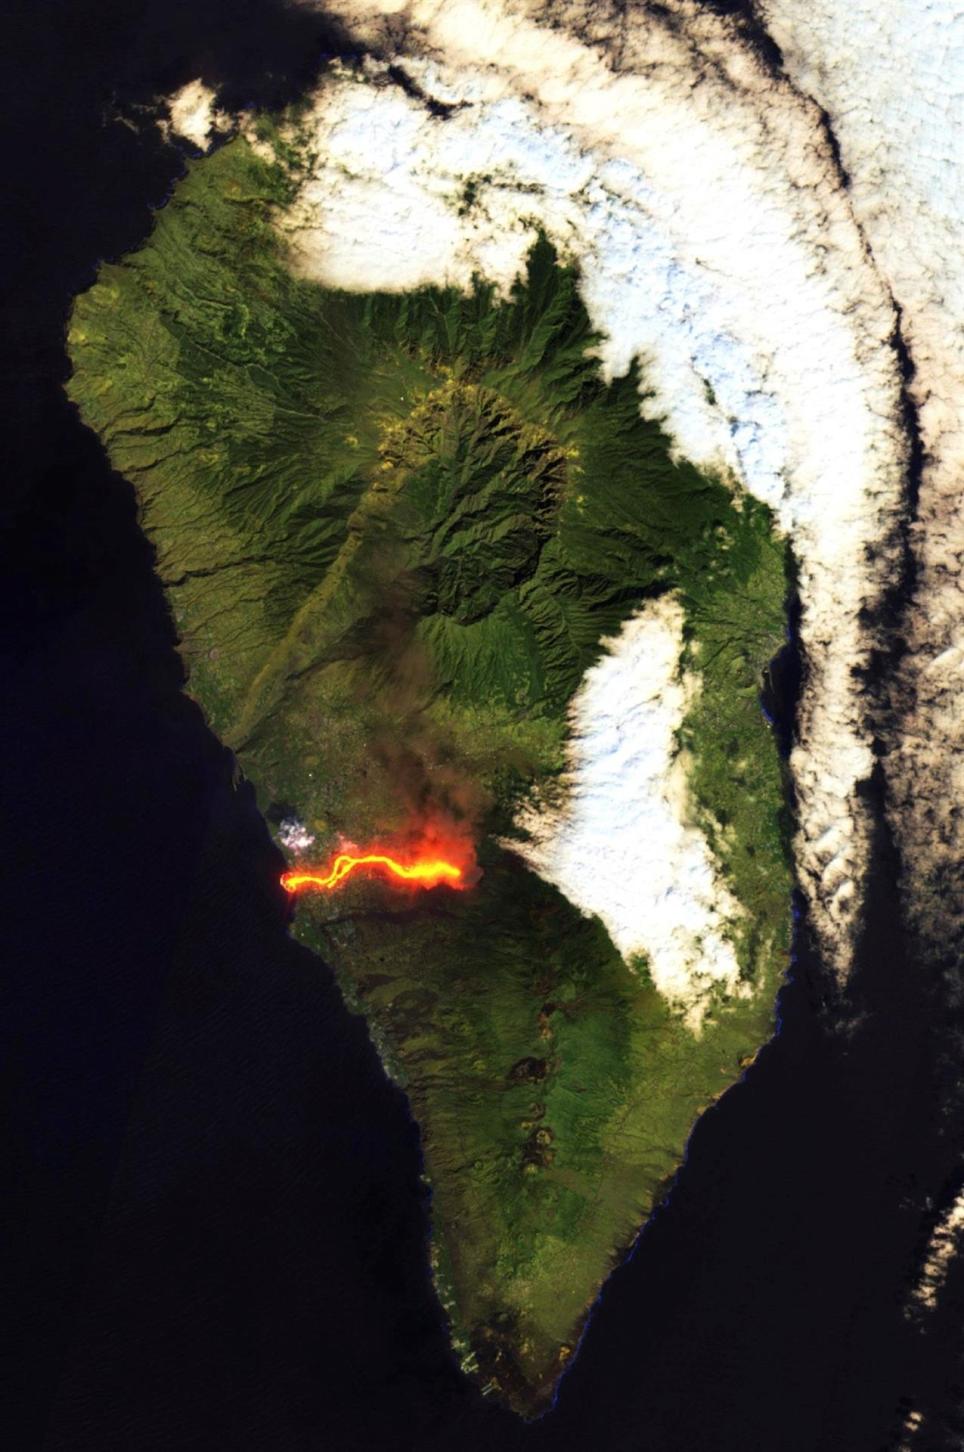 Imagen de la erupción de La Palma tomada por el satélite Sentinel-2 del programa CopernicusEU. Algunas estaciones de control de la calidad del aire próximas al volcán de la isla española de La Palma han detectado un aumento en la concentración de dióxido de azufre (SO2) en las emisiones que por el momento no representan un riesgo para la salud, según el Departamento de Seguridad Nacional (DSN). EFE/ CopernicusEU
